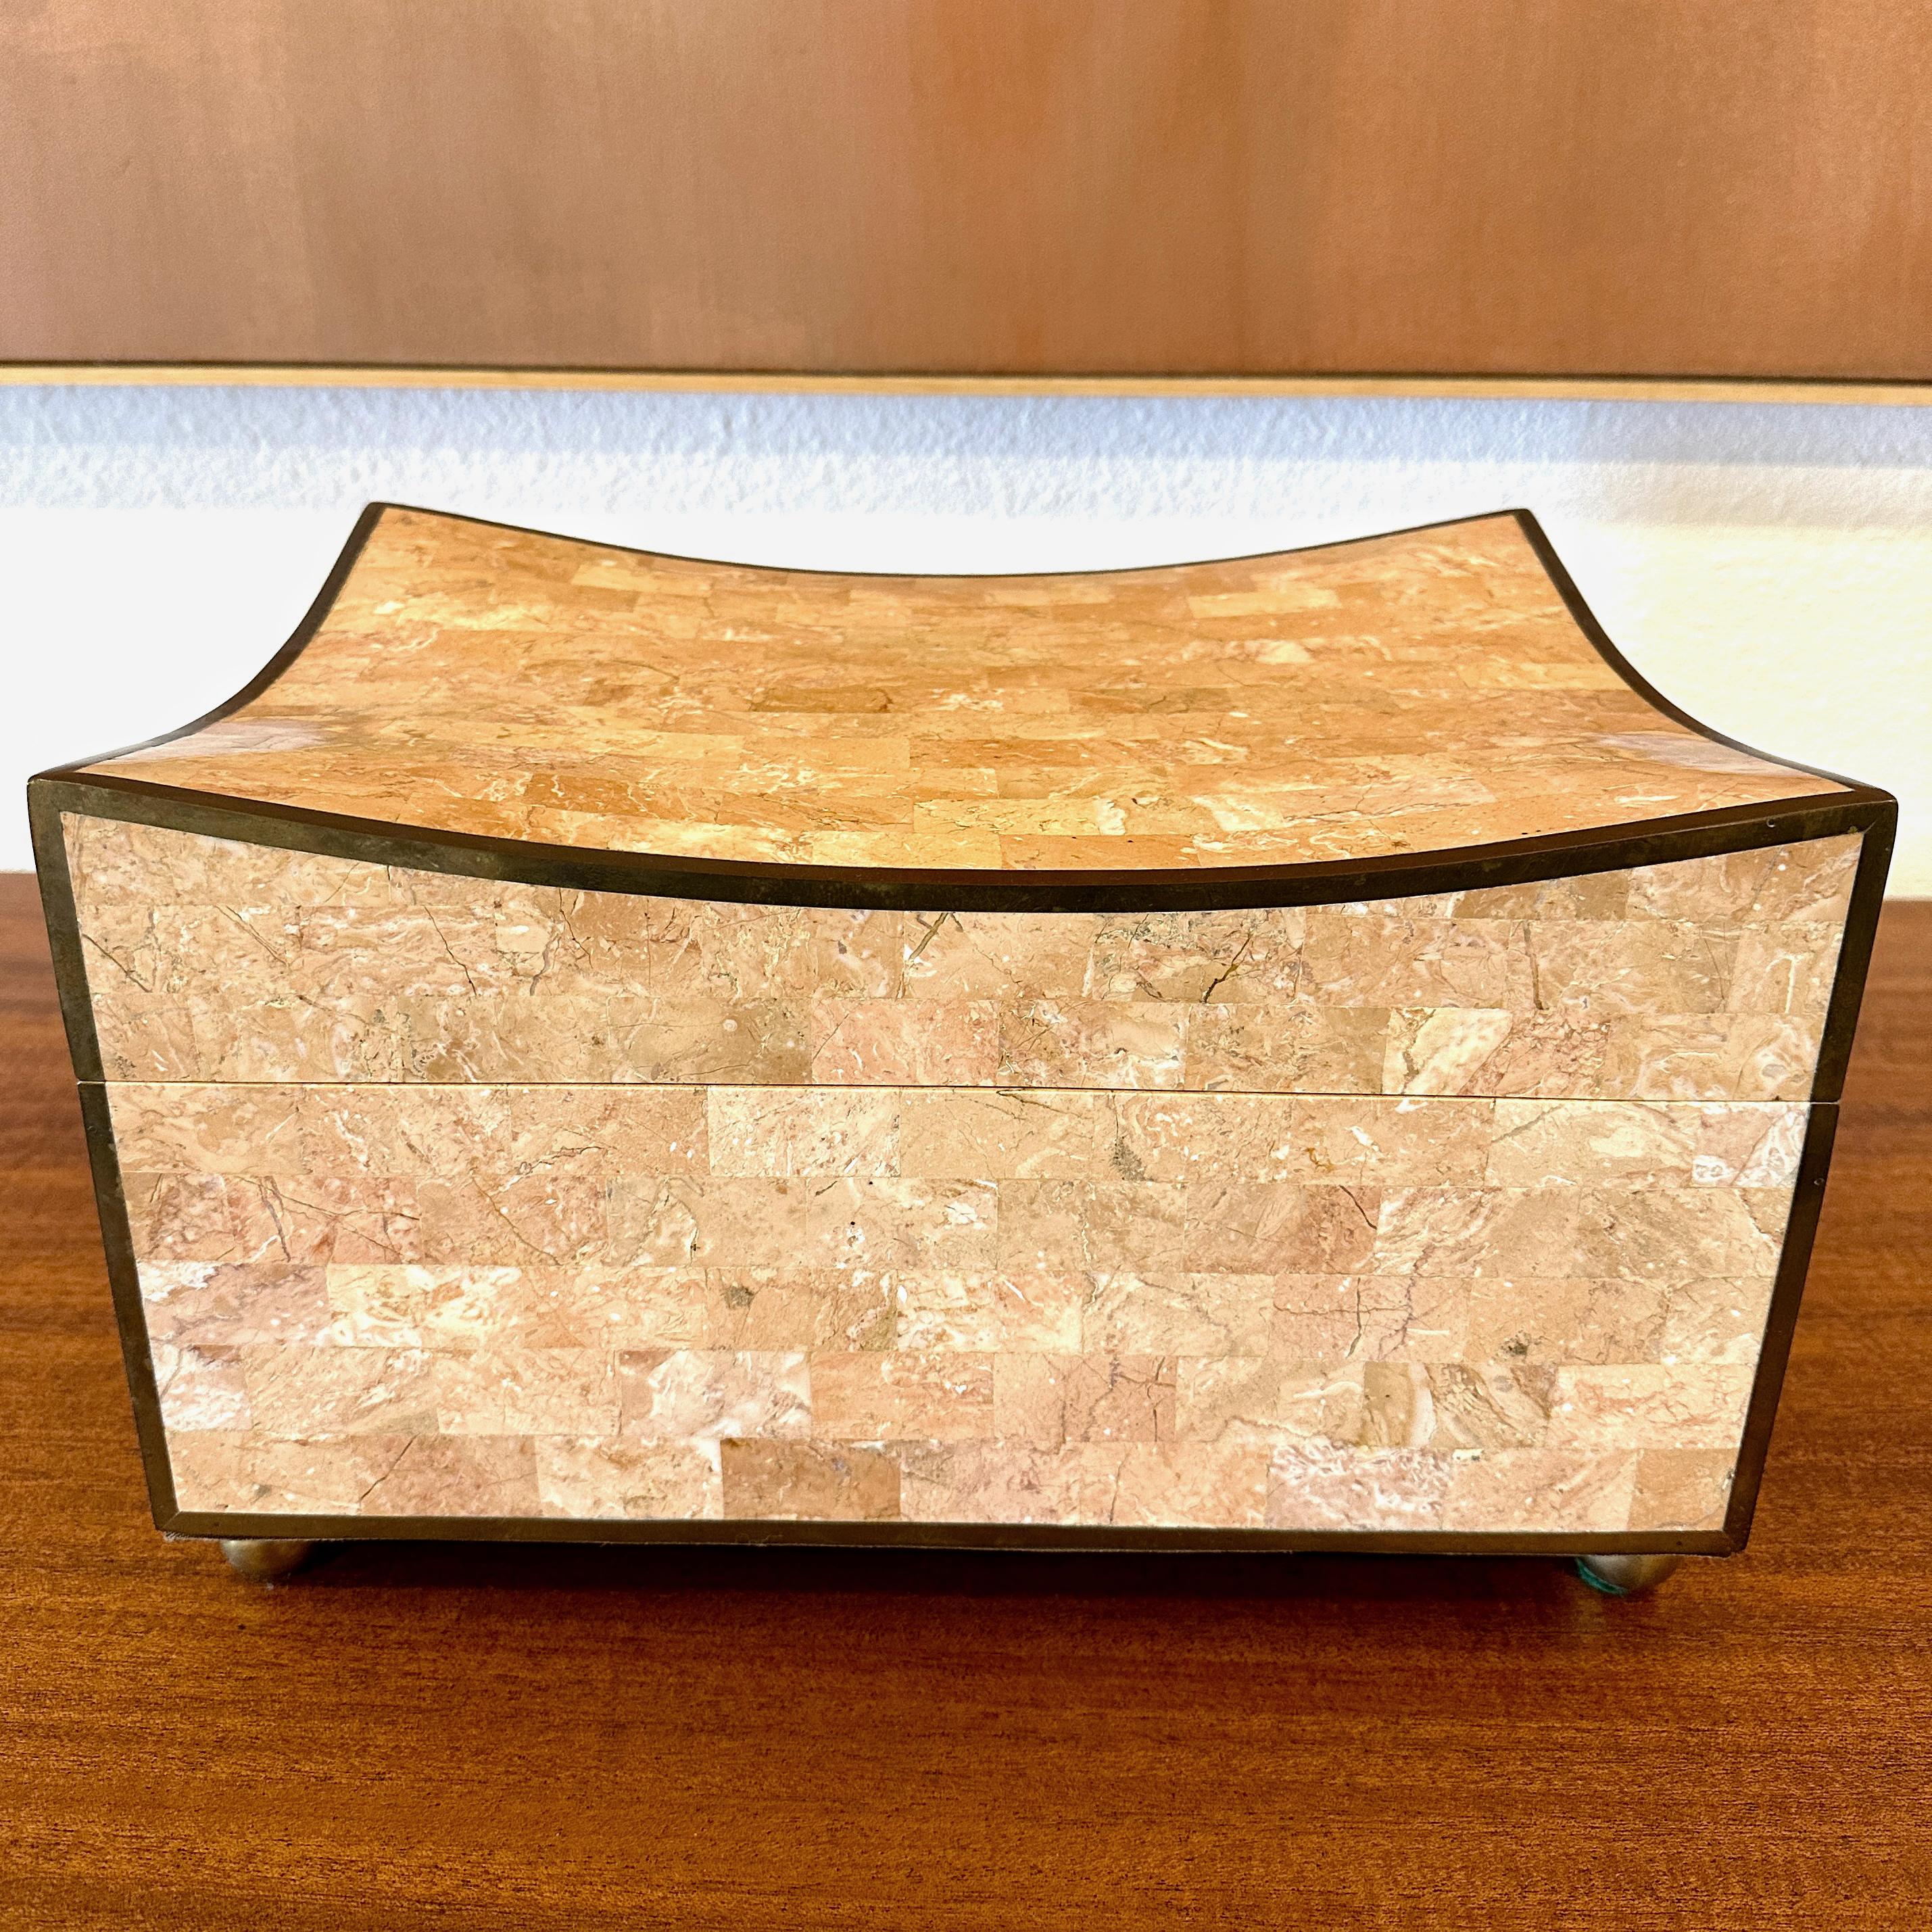 Boîte inhabituelle en marbre rose tessellé de Maitland Smith, vers les années 1990.

Ce coffret rectangulaire est revêtu d'un beau marbre rose tessellé et rehaussé d'une incrustation de laiton sur toute la surface des bords, qui a vieilli pour